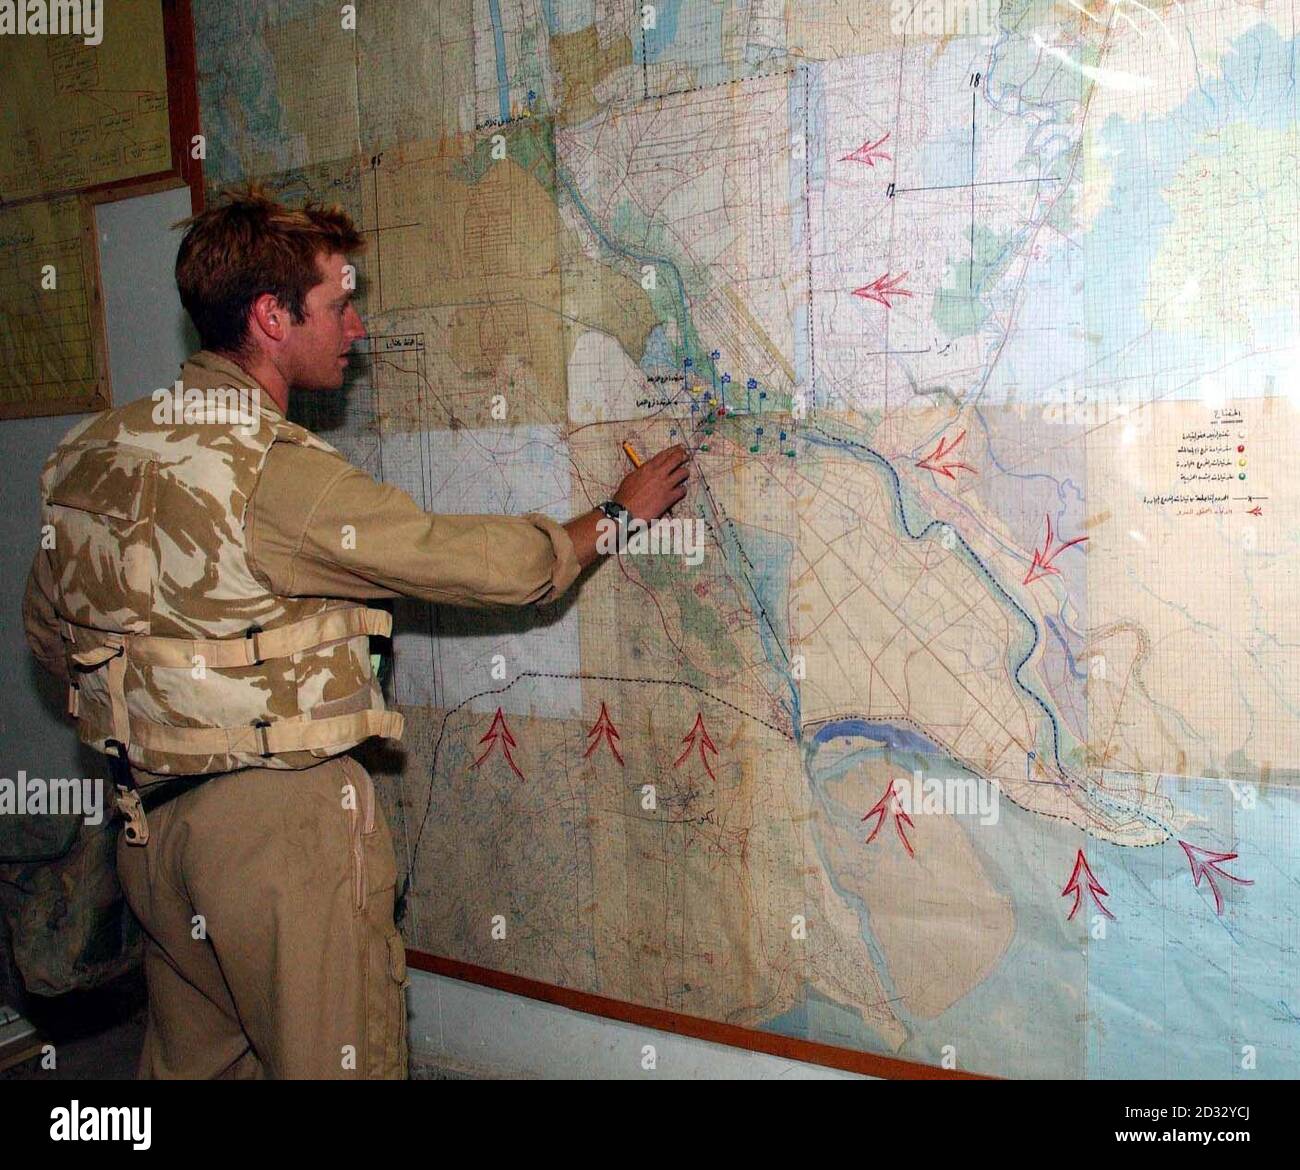 Capt Ian Fake schaut sich die Karten an, die im Parteihauptsitz von Baath in Basra zurückgeblieben sind, während die Zyklopen-Geschwader vom 2. Royal Tank Regiment die Stadt im Südirak einnehmen. Stockfoto